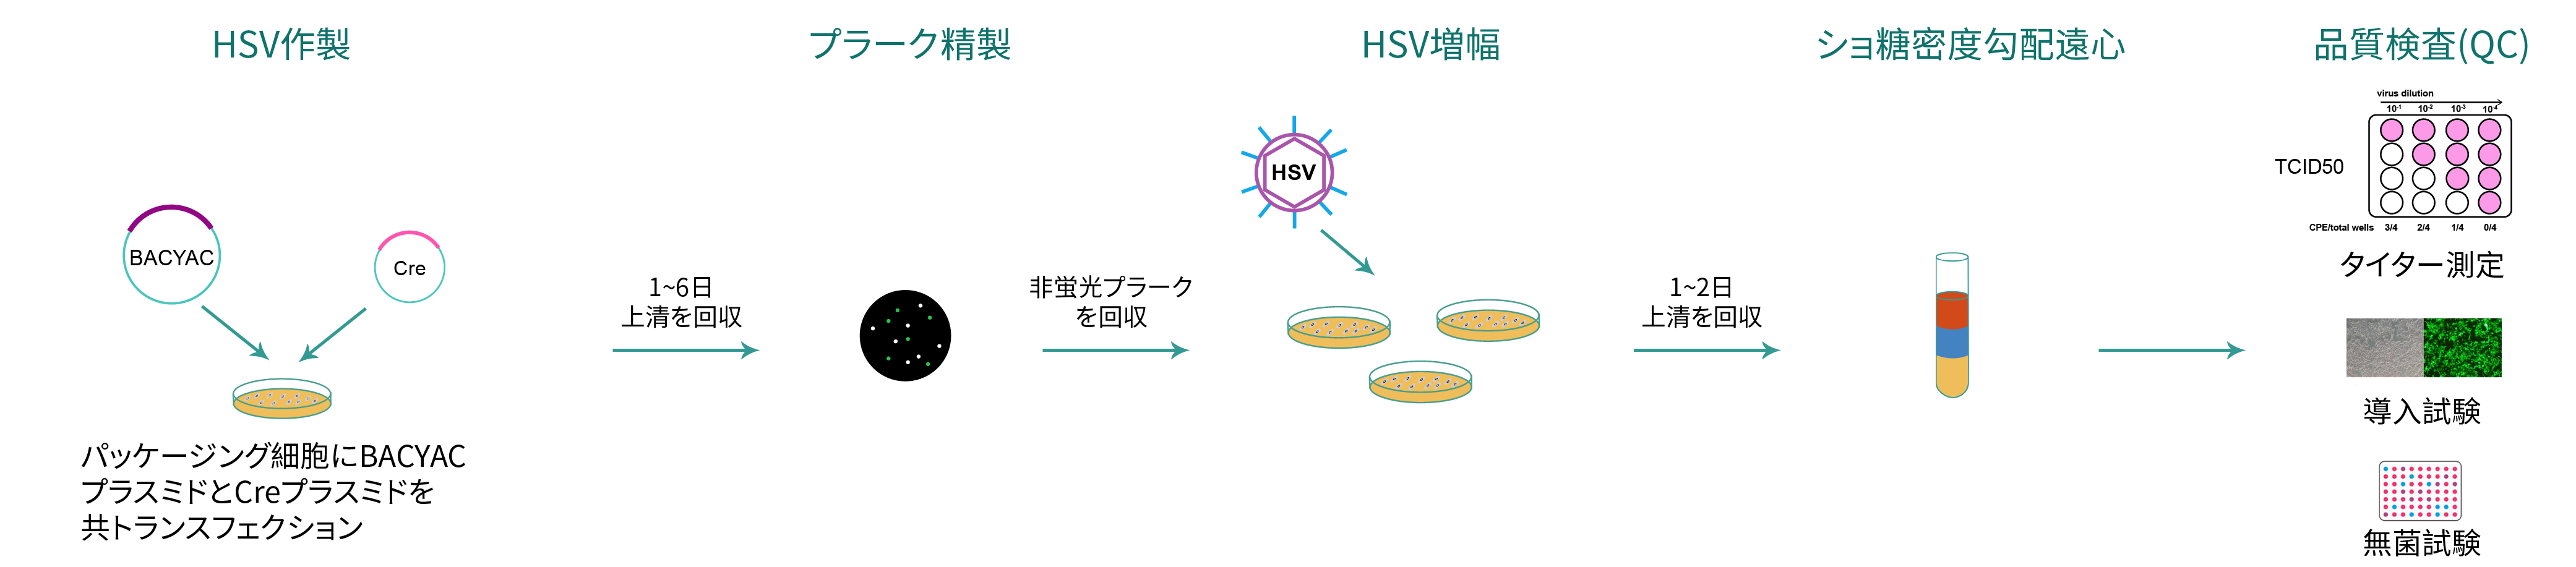 HSVパッケージングの製造と品質検査のワークフロー